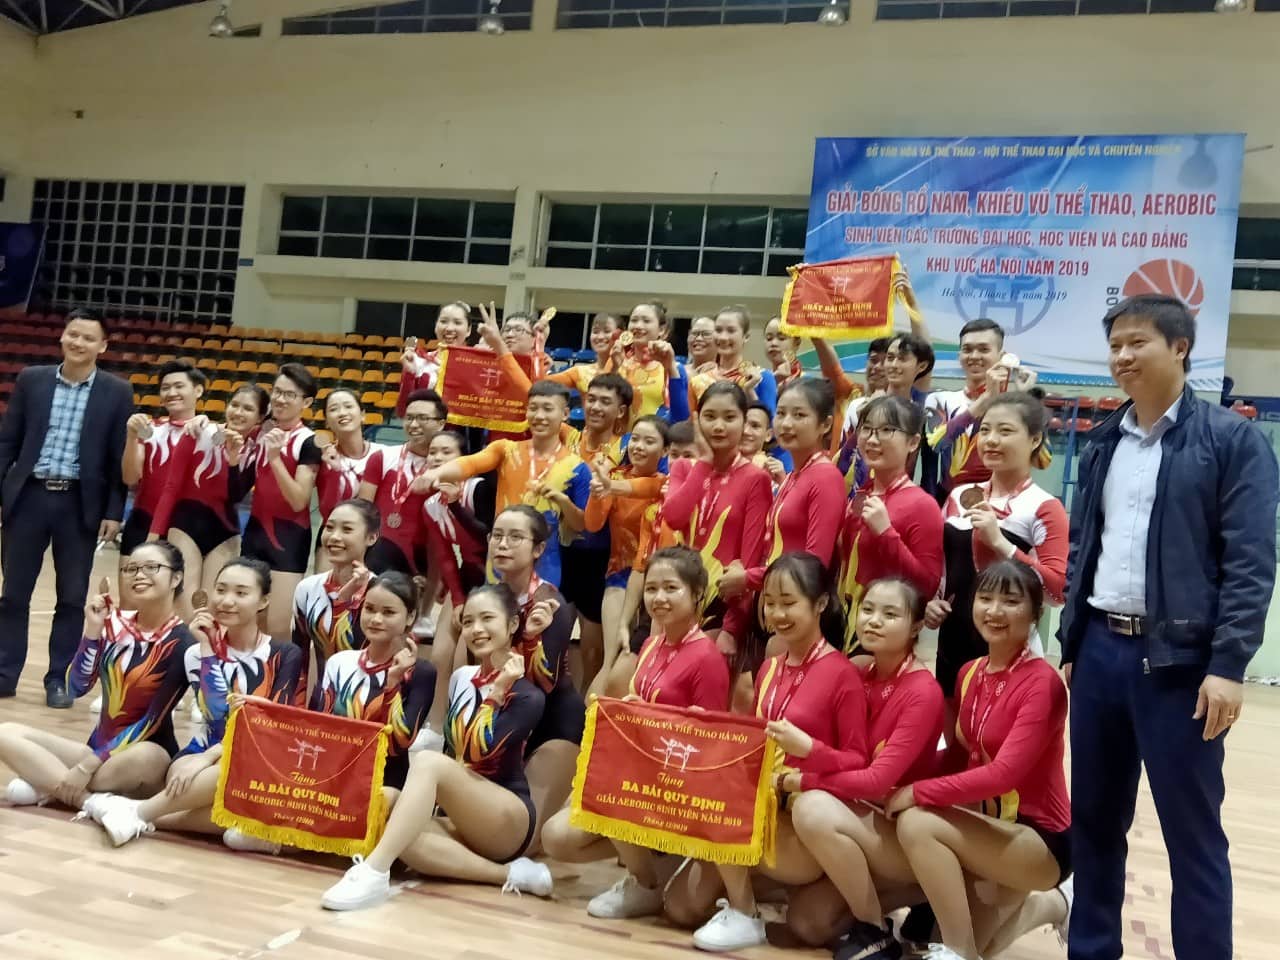 Chung kết giải ` Bóng rổ nam, Khiêu vũ thể thao, Aerobic sinh viên các trường Đại học, Học viện và Cao đẳng khu vực Hà Nội năm 2019